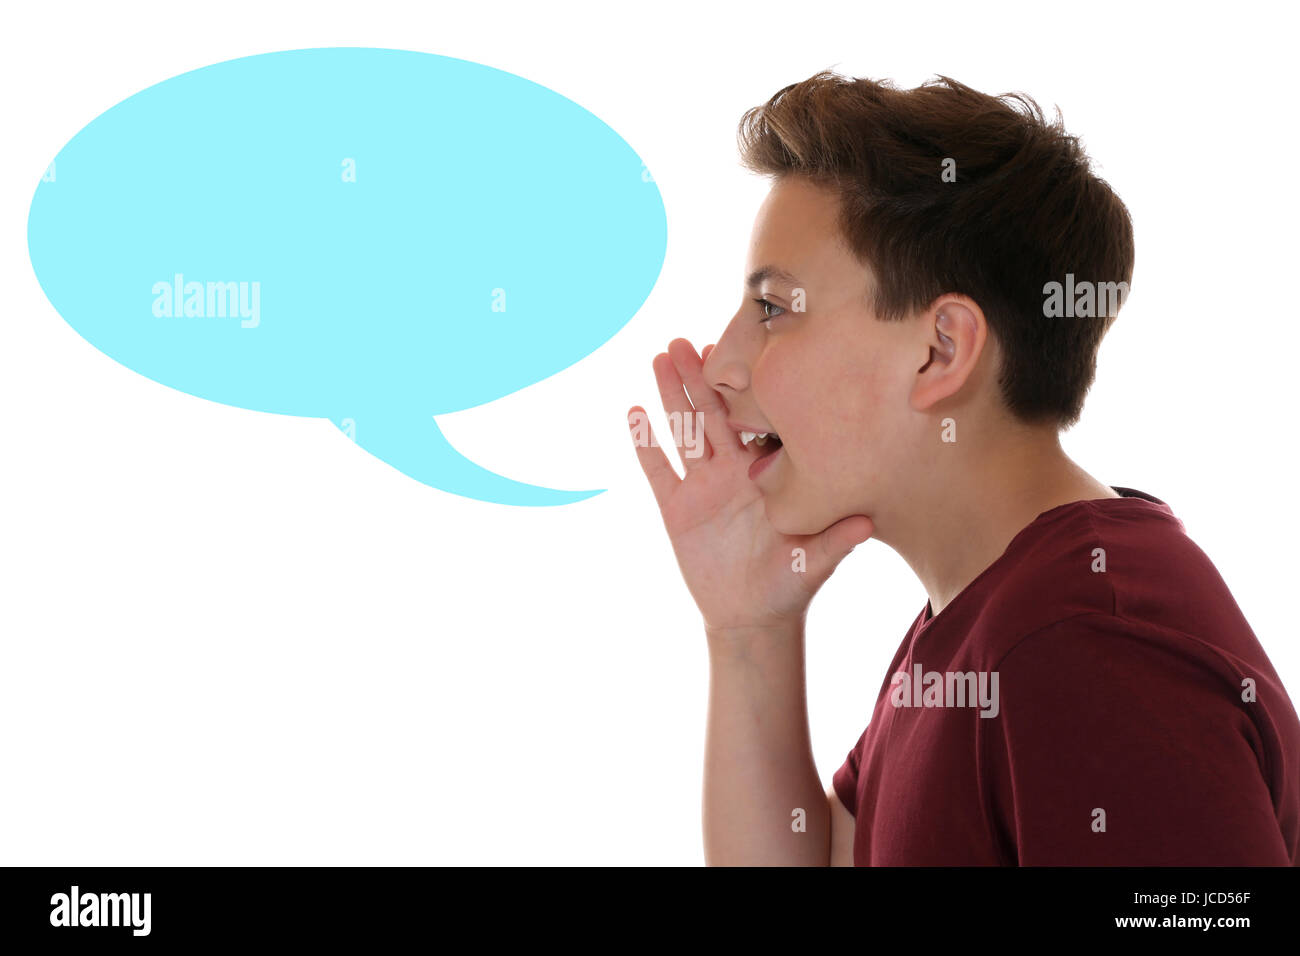 Junge beim Sprechen und mit Sprechblase, Textfreiraum isoliert vor einem weissen Hintergrund Banque D'Images